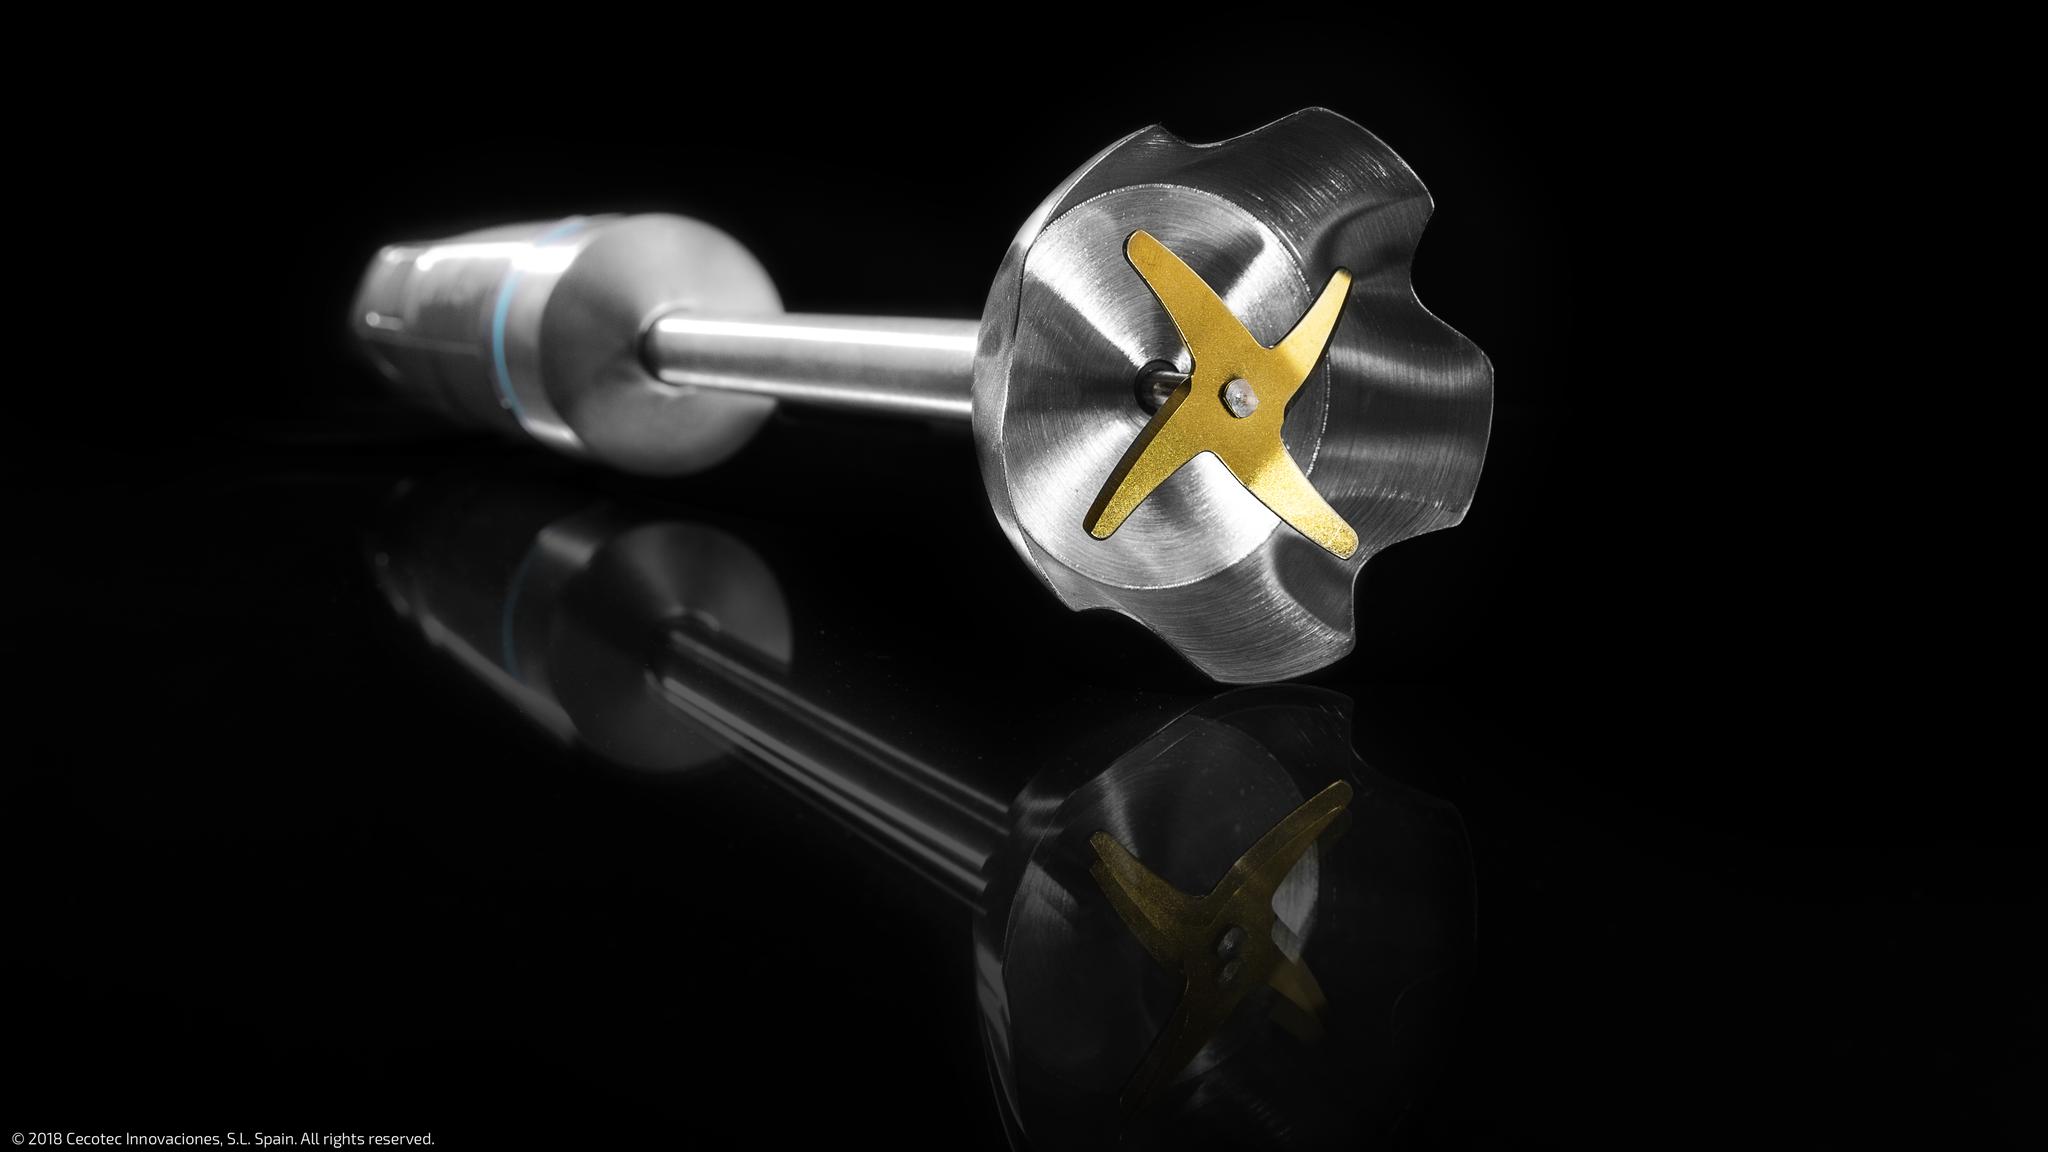 X-Blades: 4 lame con rivestimento in titanio